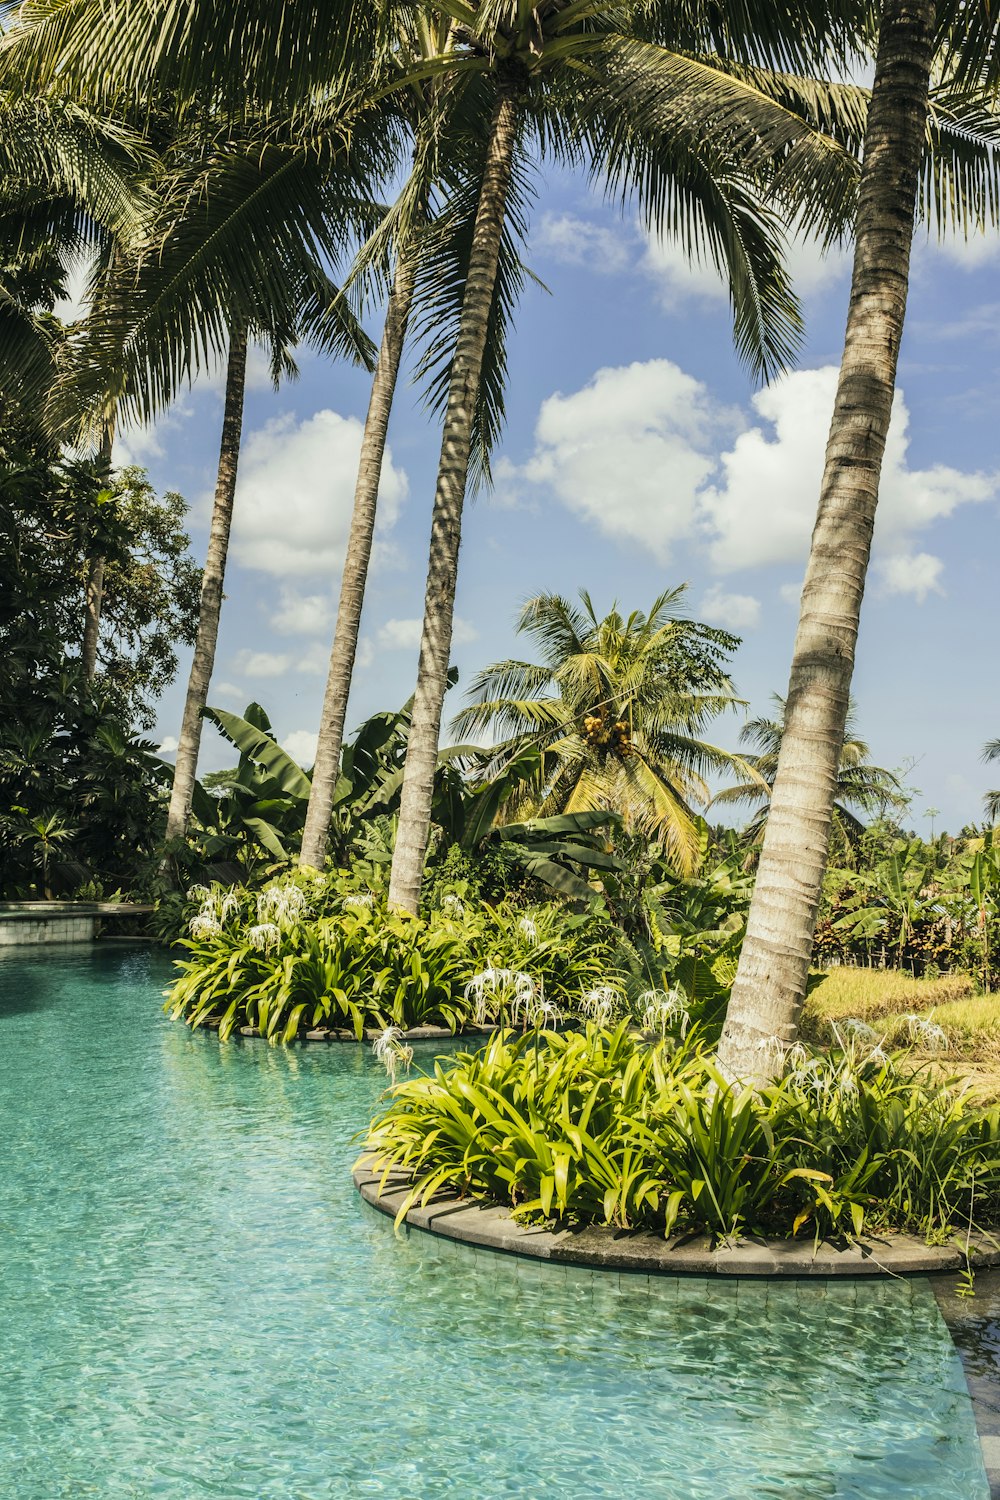 una piscina circondata da palme in un ambiente tropicale